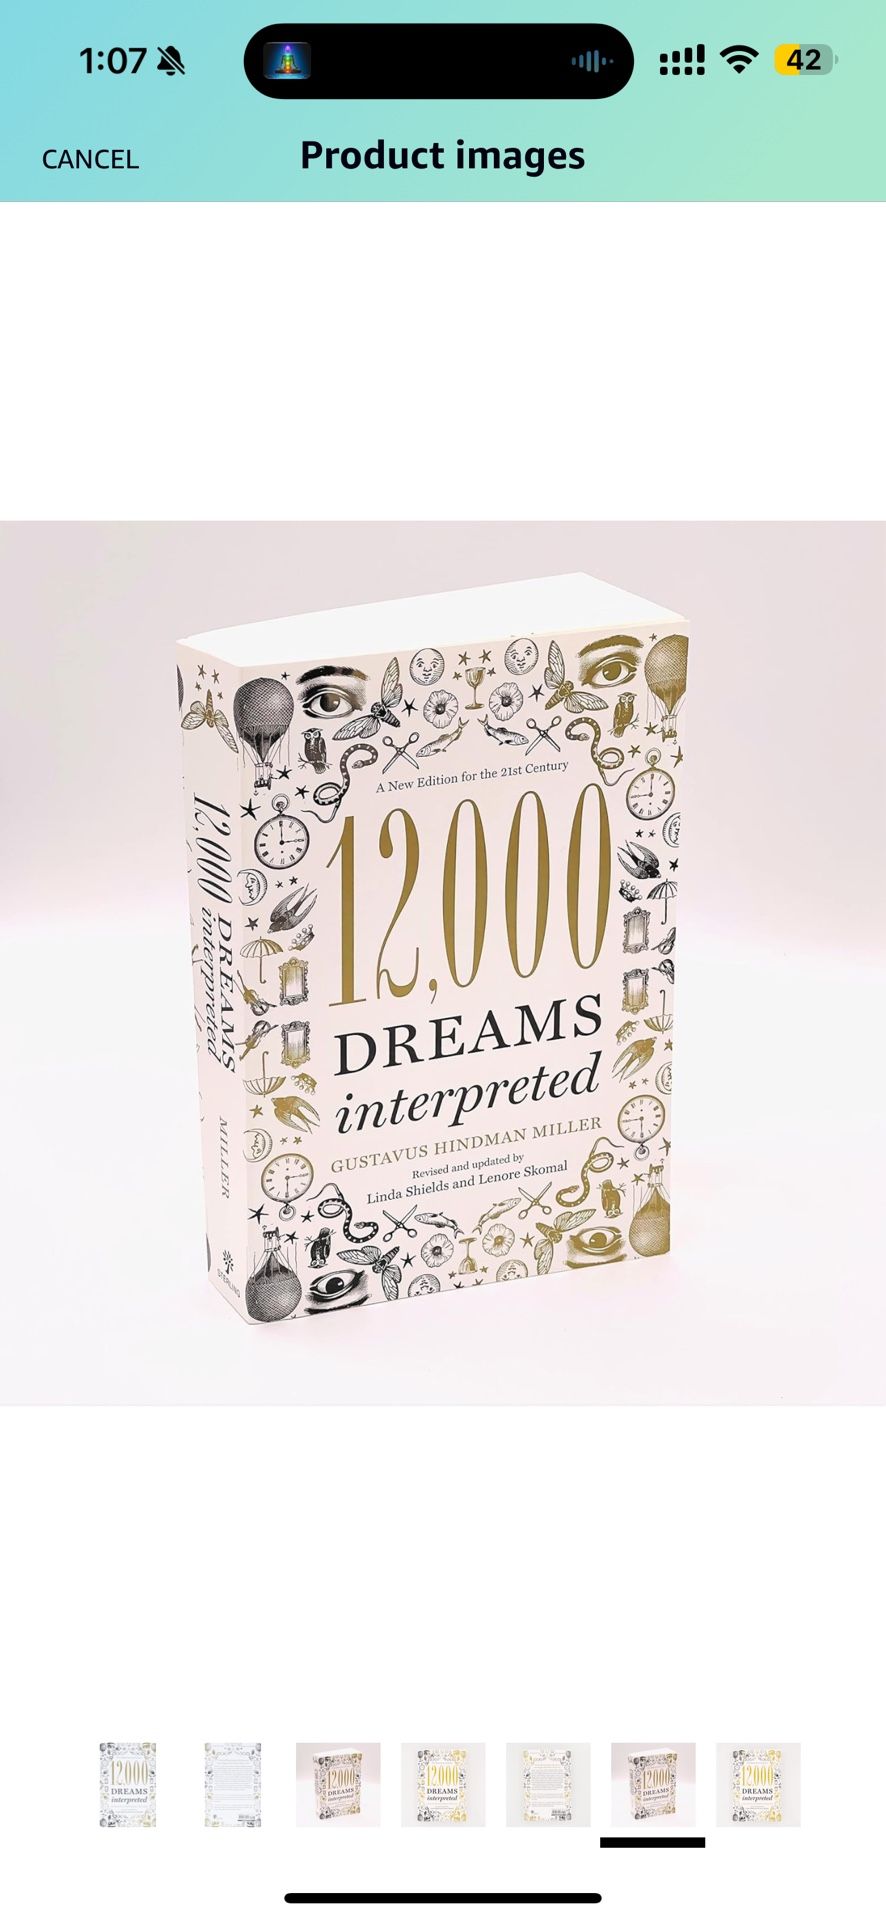 12000 DREAMS interpreted